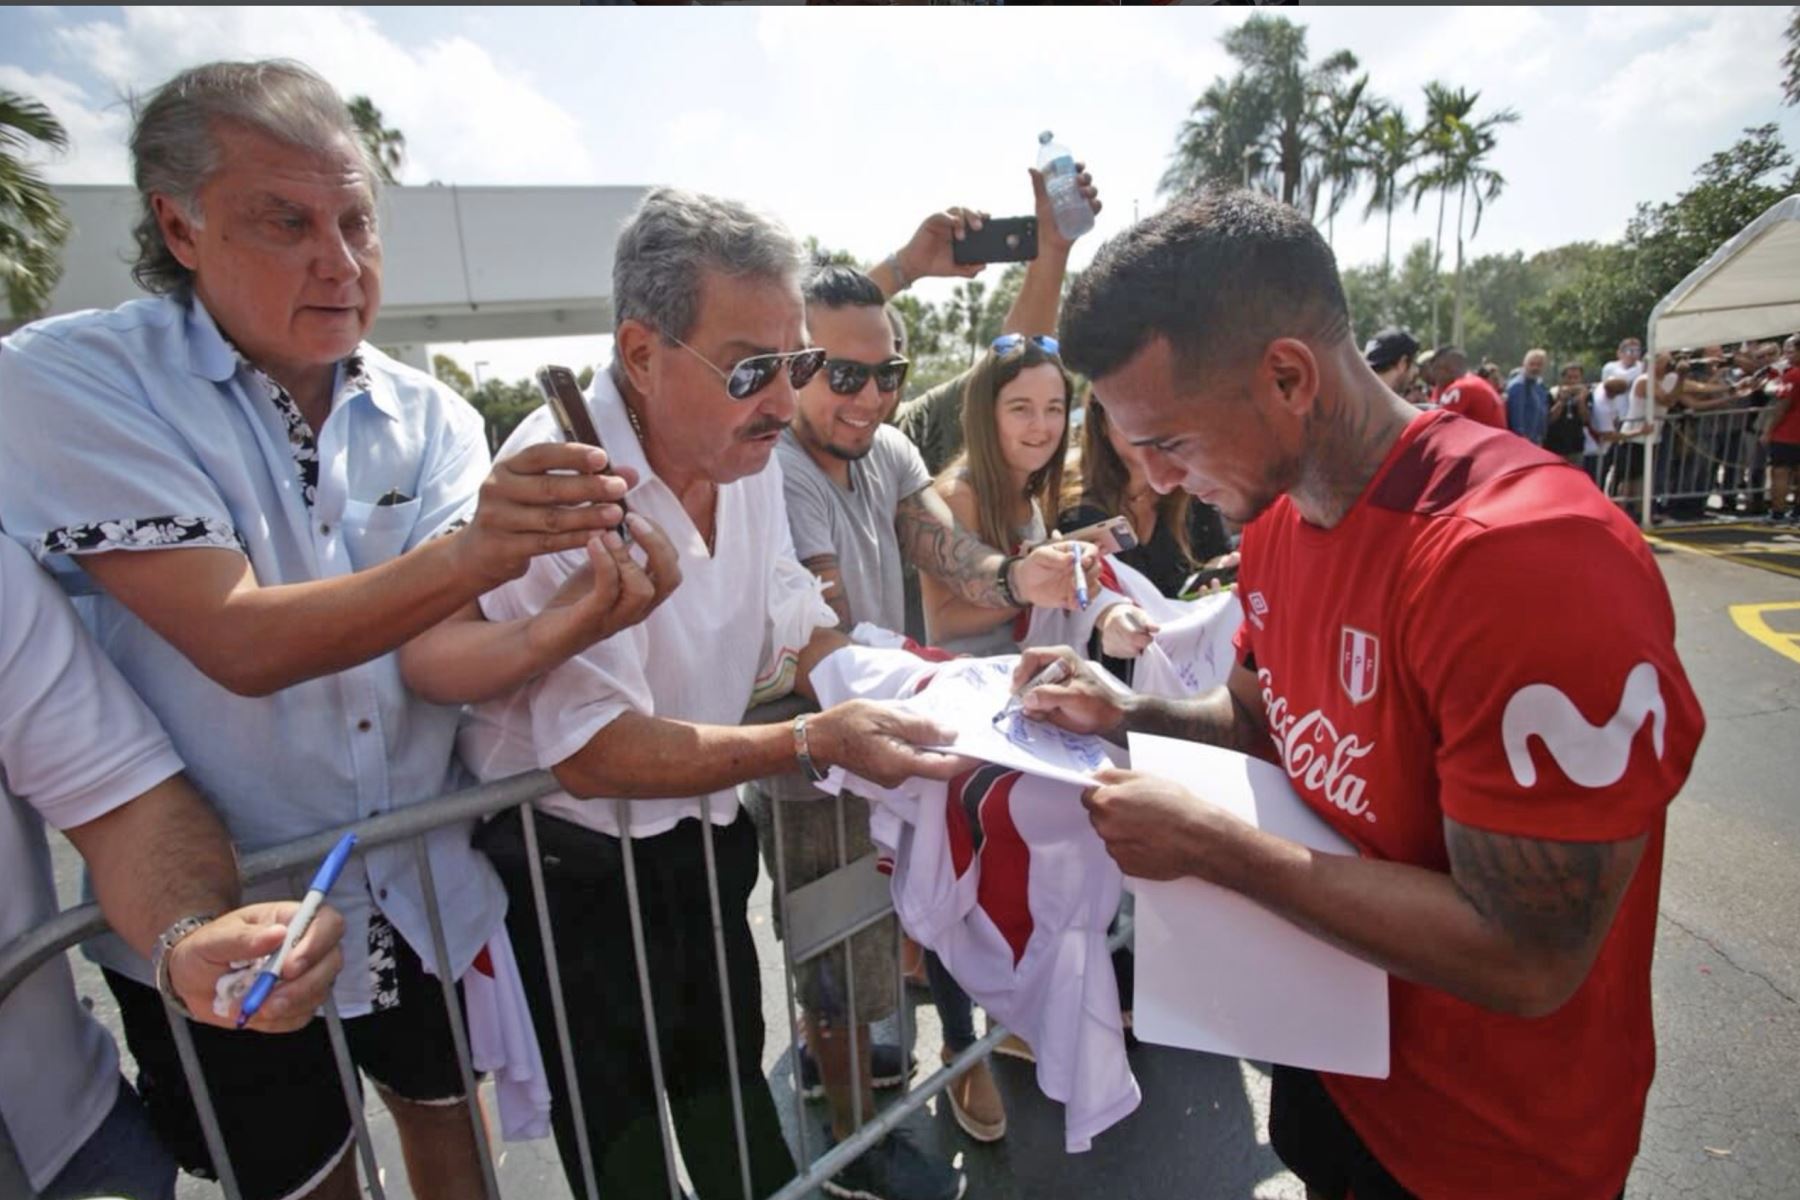 La selección peruana realizó su segundo entrenamiento en Fort Lauderdale, Miami, bajo las órdenes del técnico Ricardo Gareca. Foto: ANDINA/Twiter FPF.